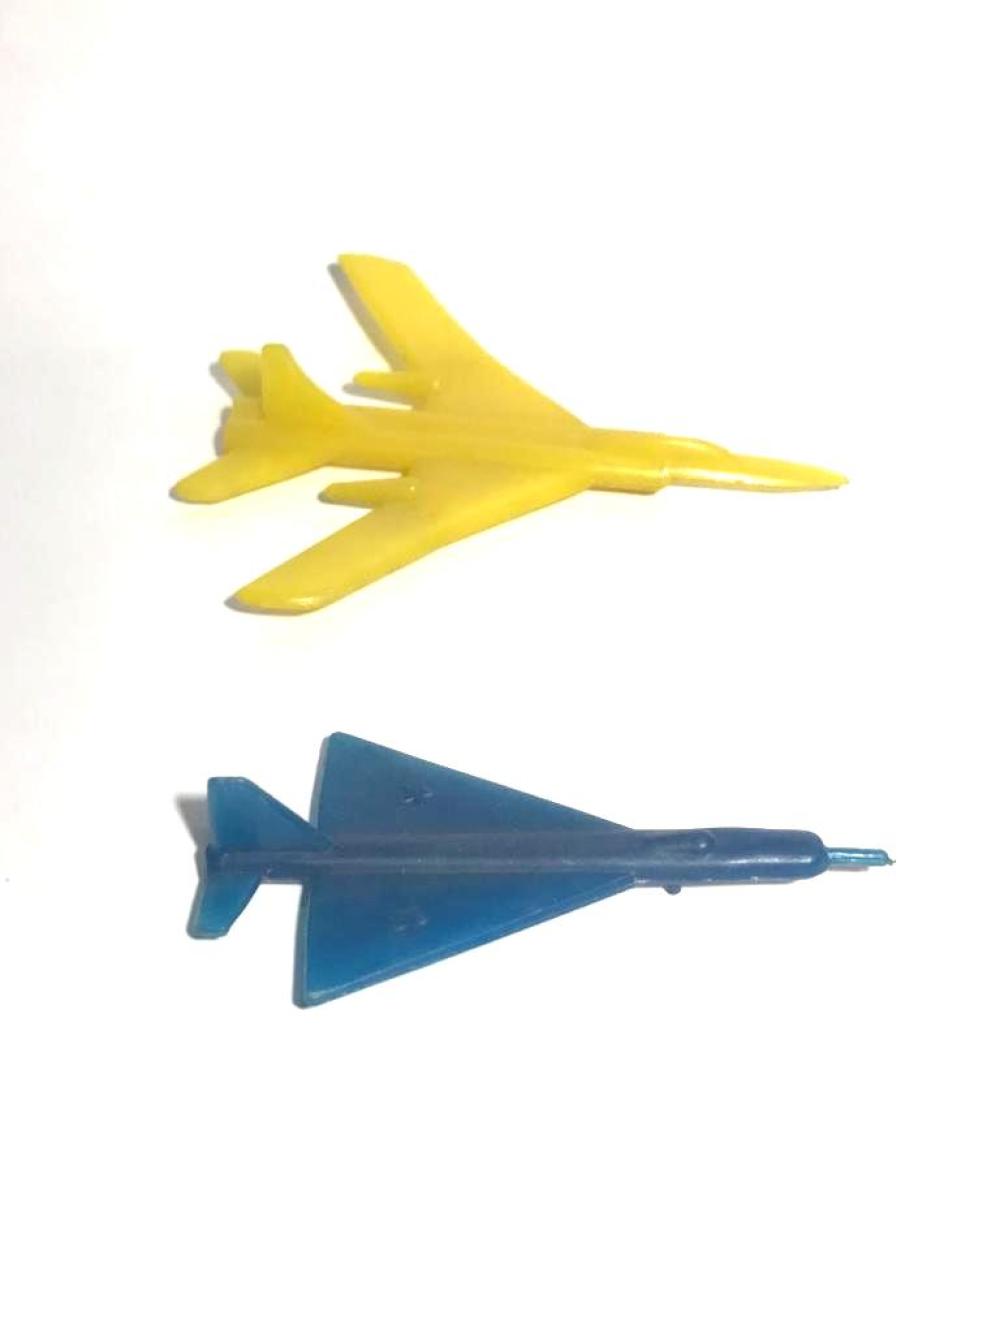 2 adet Savaş uçağı - Sovyet dönemi, plastik oyuncak